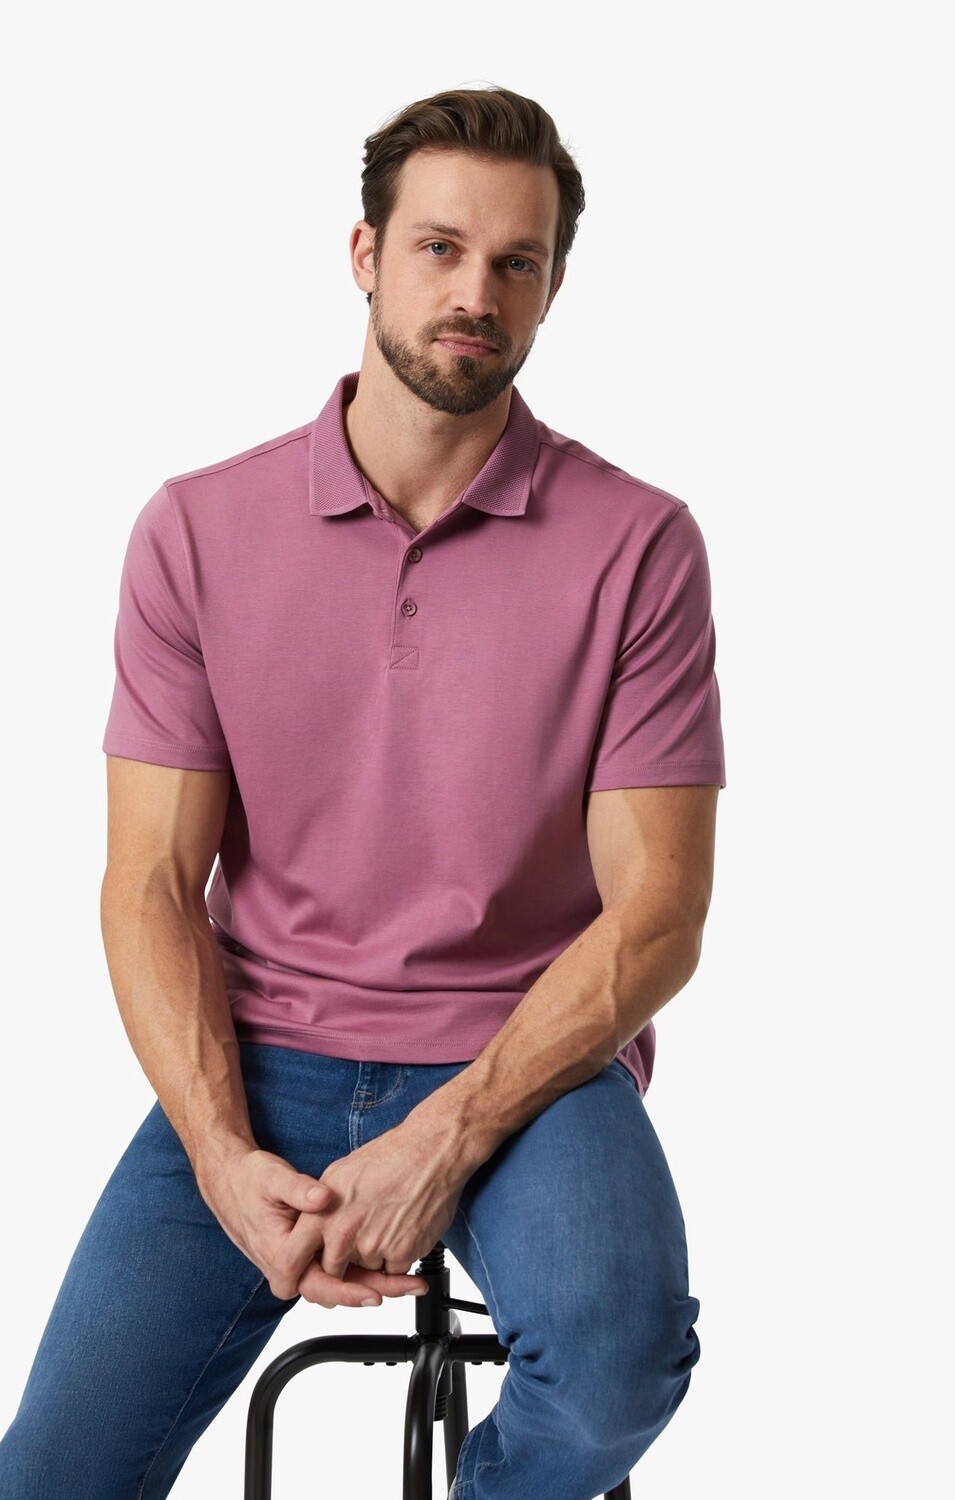 Polo T-Shirt - Pima Cotton, Size: M, Colour: Rosewood